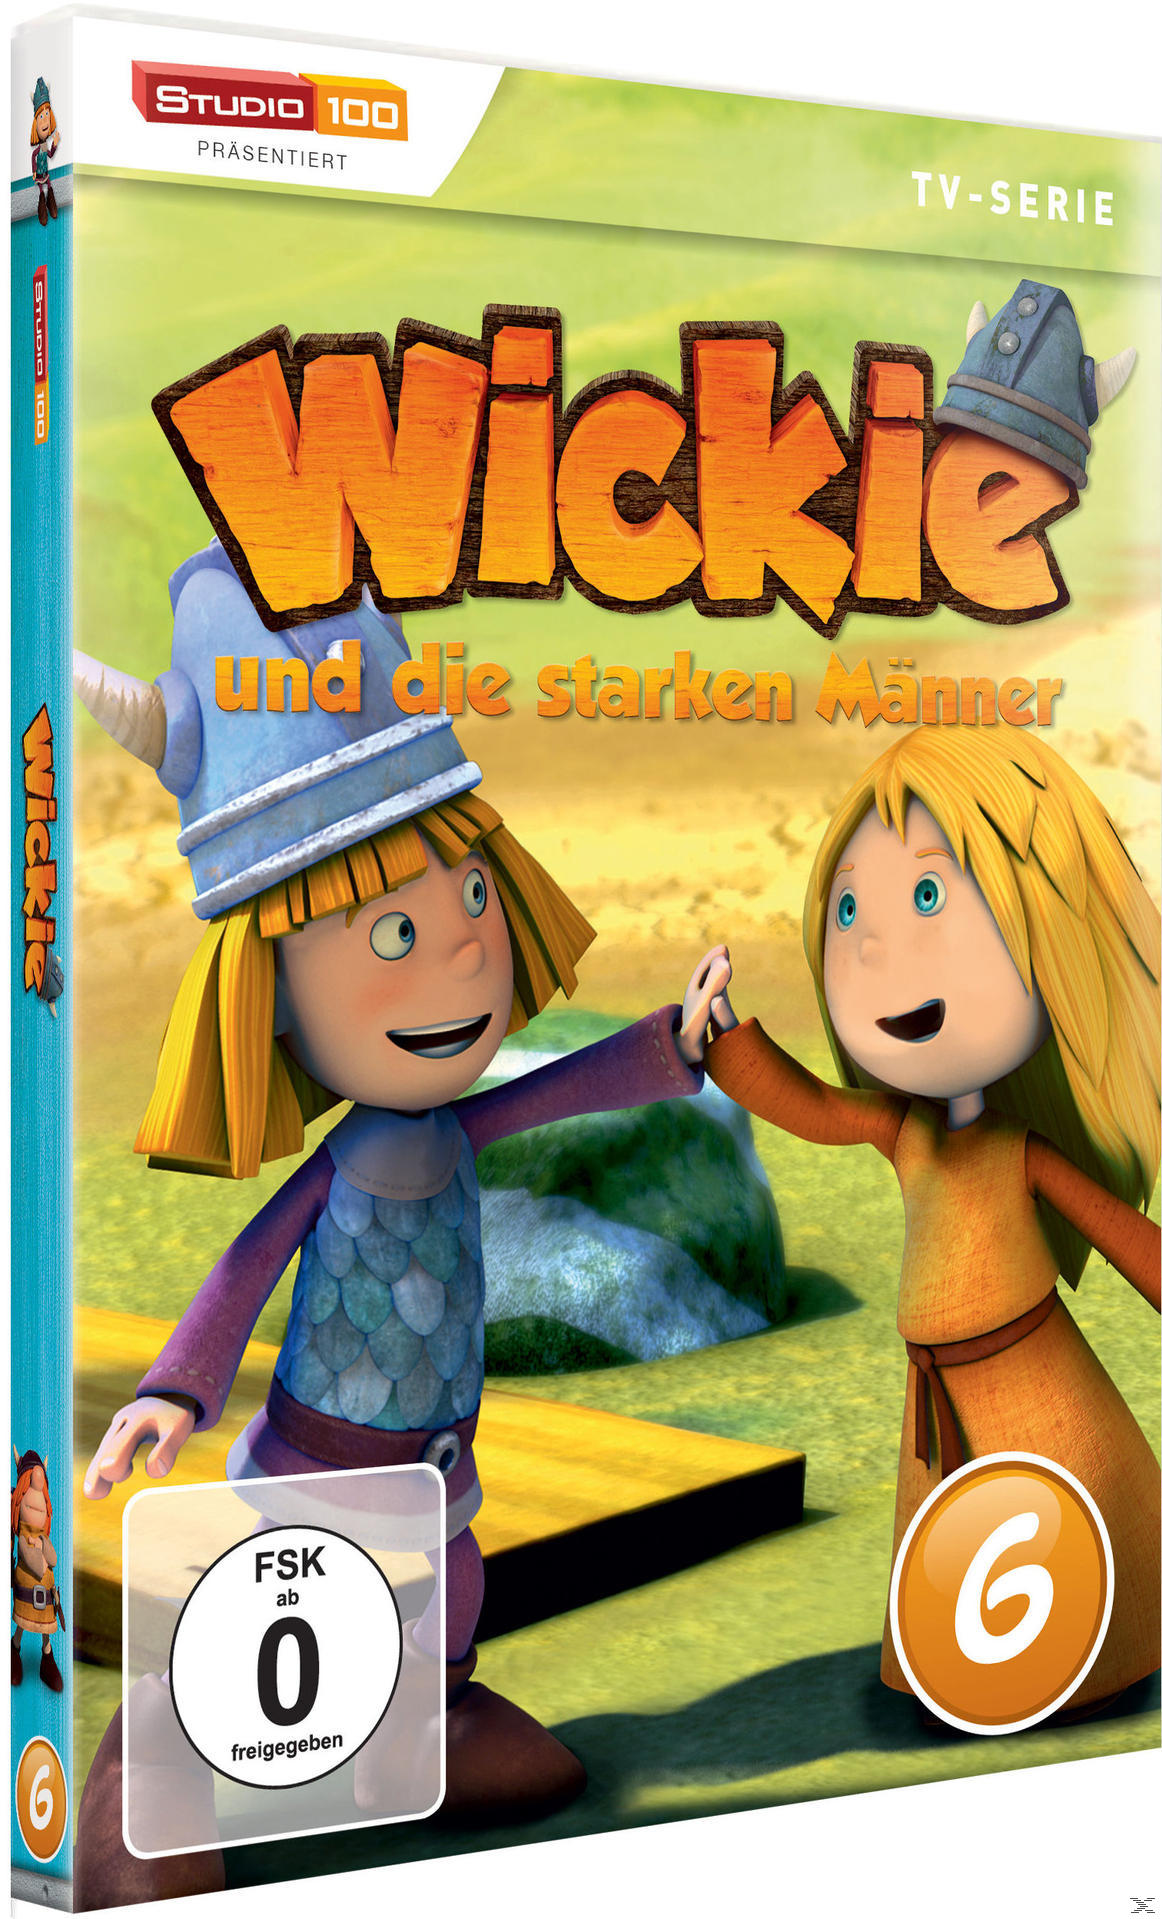 006 - WICKIE UND STARKEN MÄNNER DIE DVD